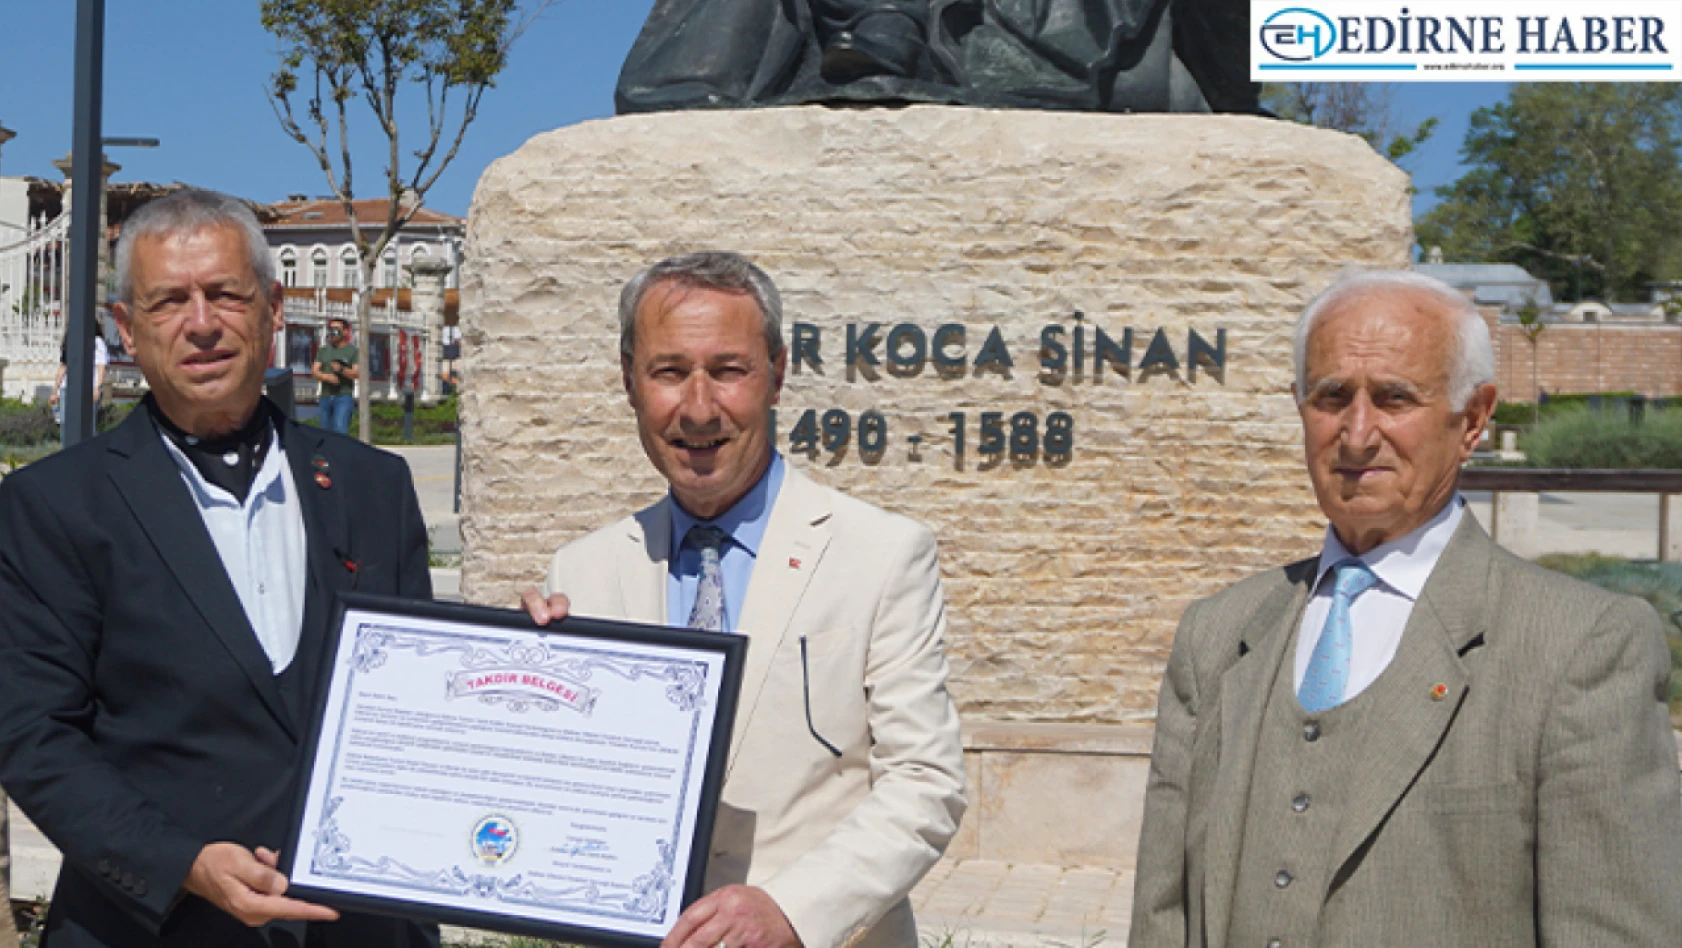 Turizm elçisi Dinar'a takdirname belgesi verildi